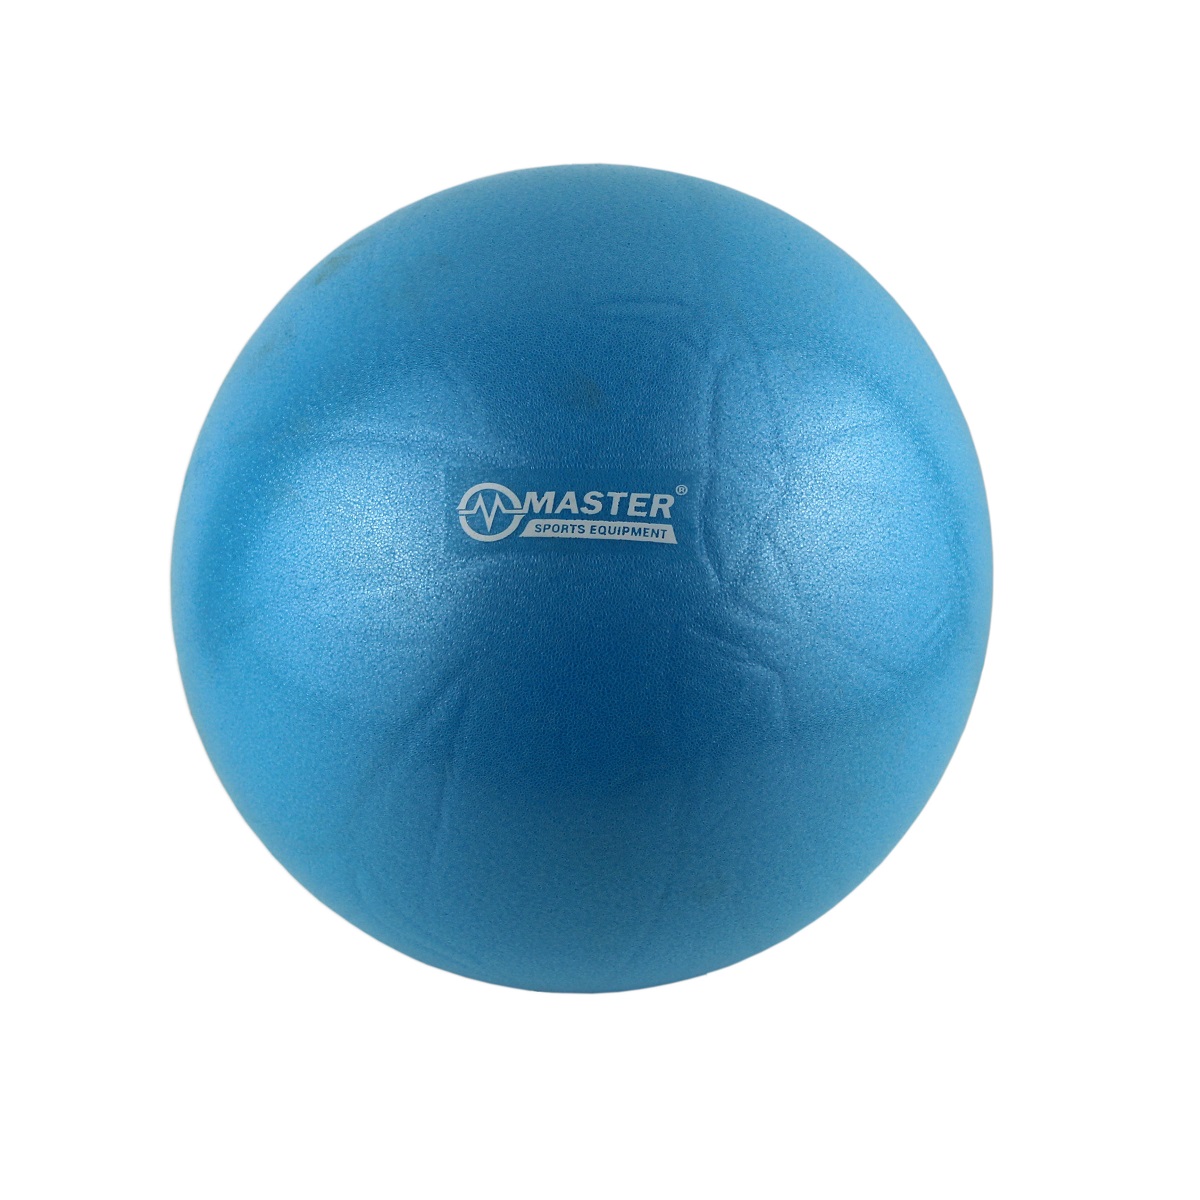 Gymnastický míč MASTER over ball - 26 cm - modrý